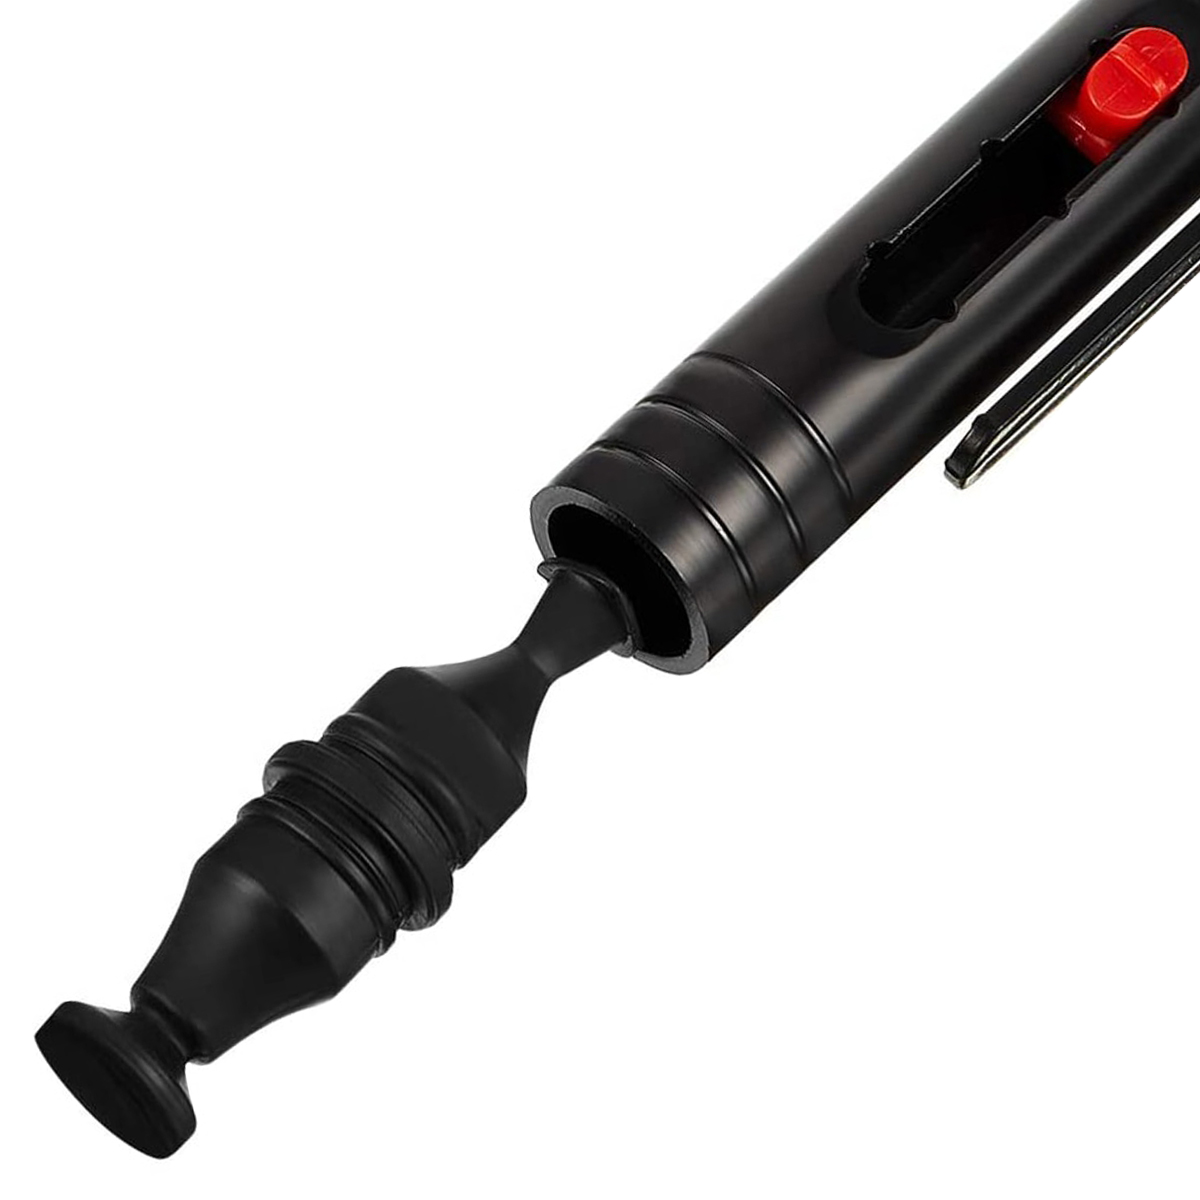 Penna di pulizia BRESSER BR-LP10 per lenti, obiettivi e i filtri